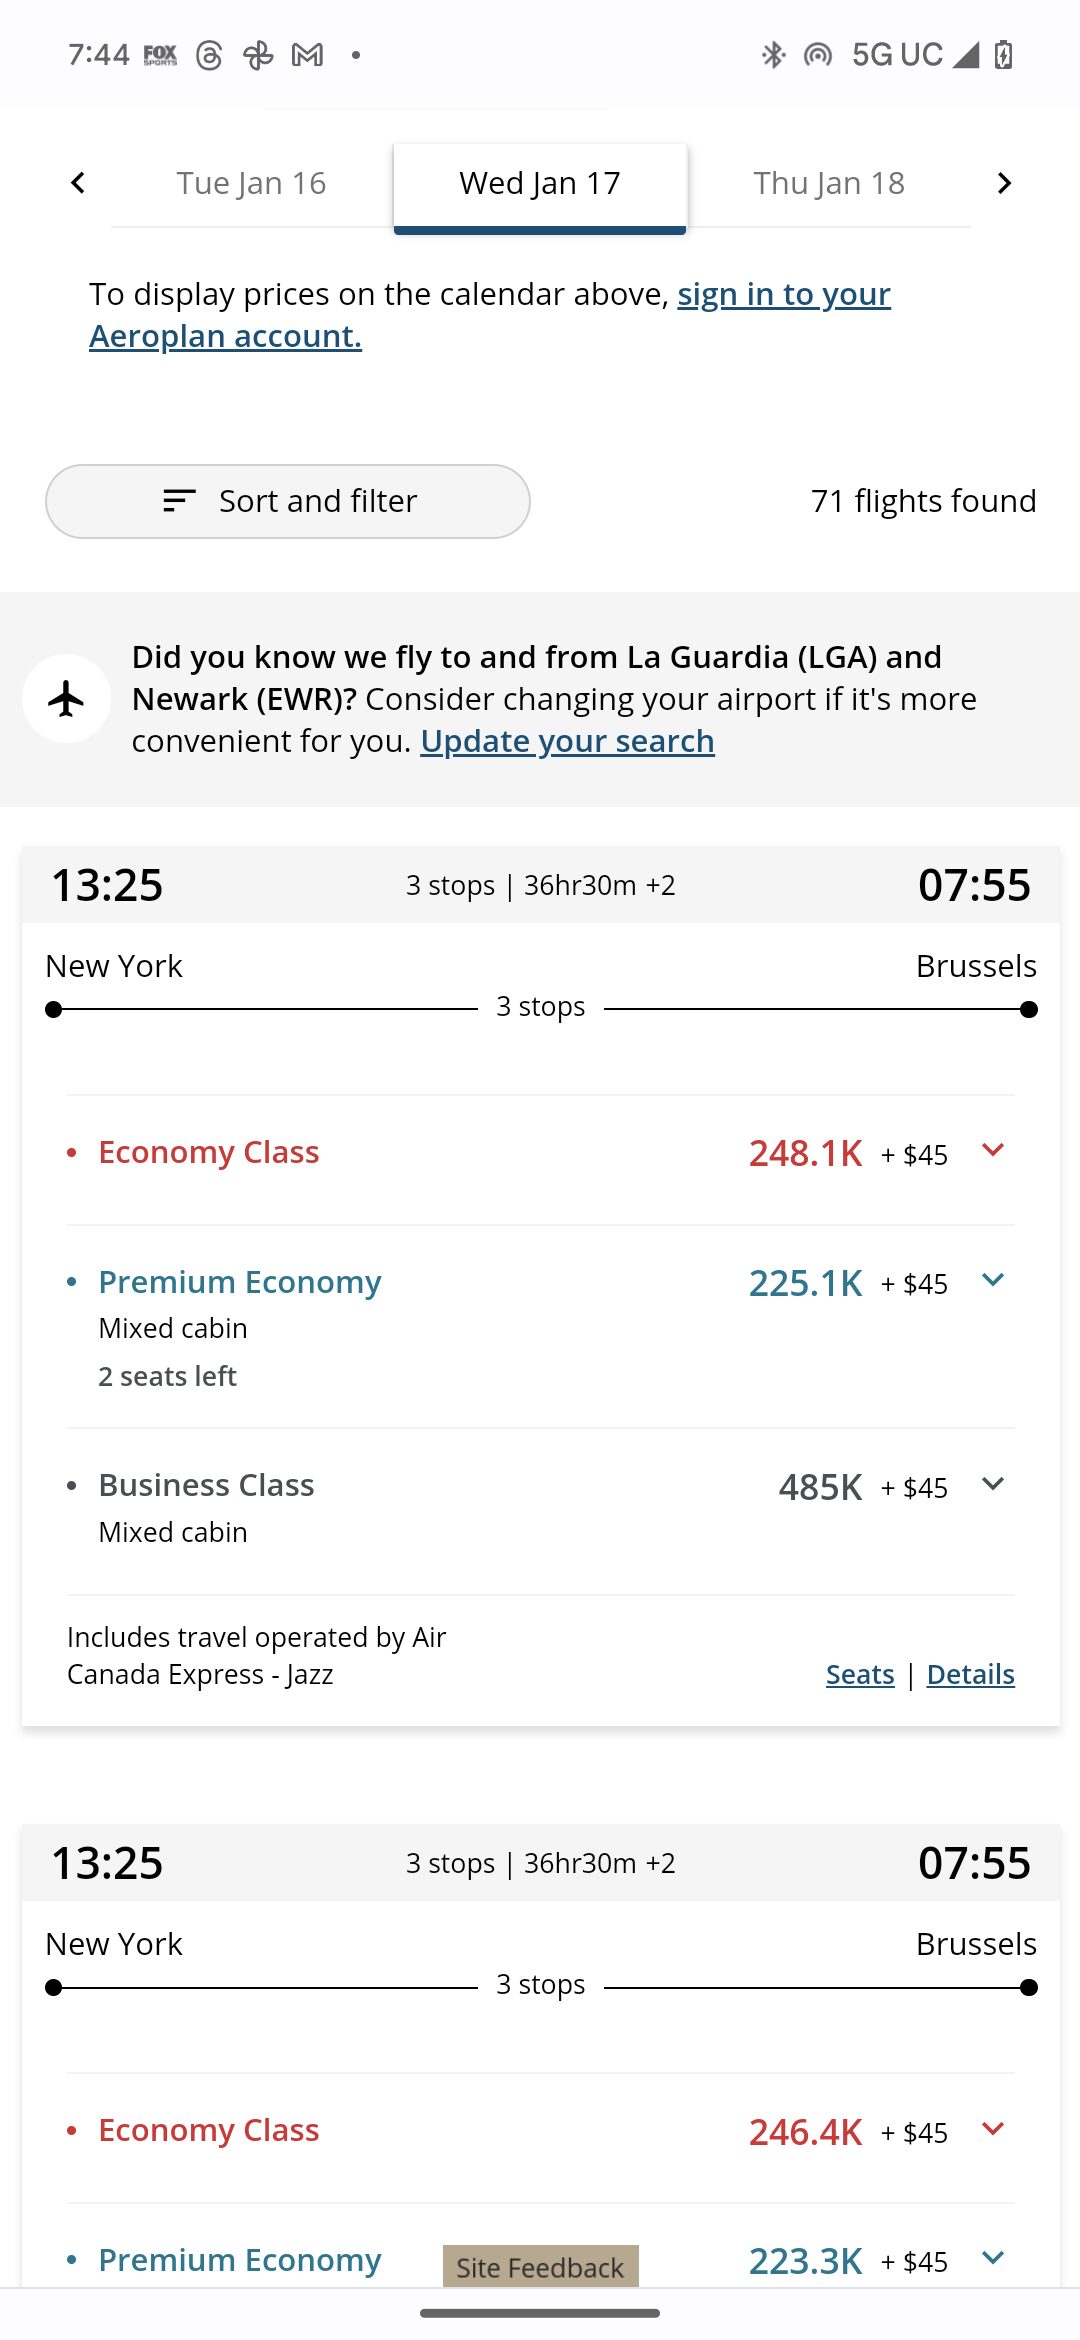 screenshot of a flight schedule